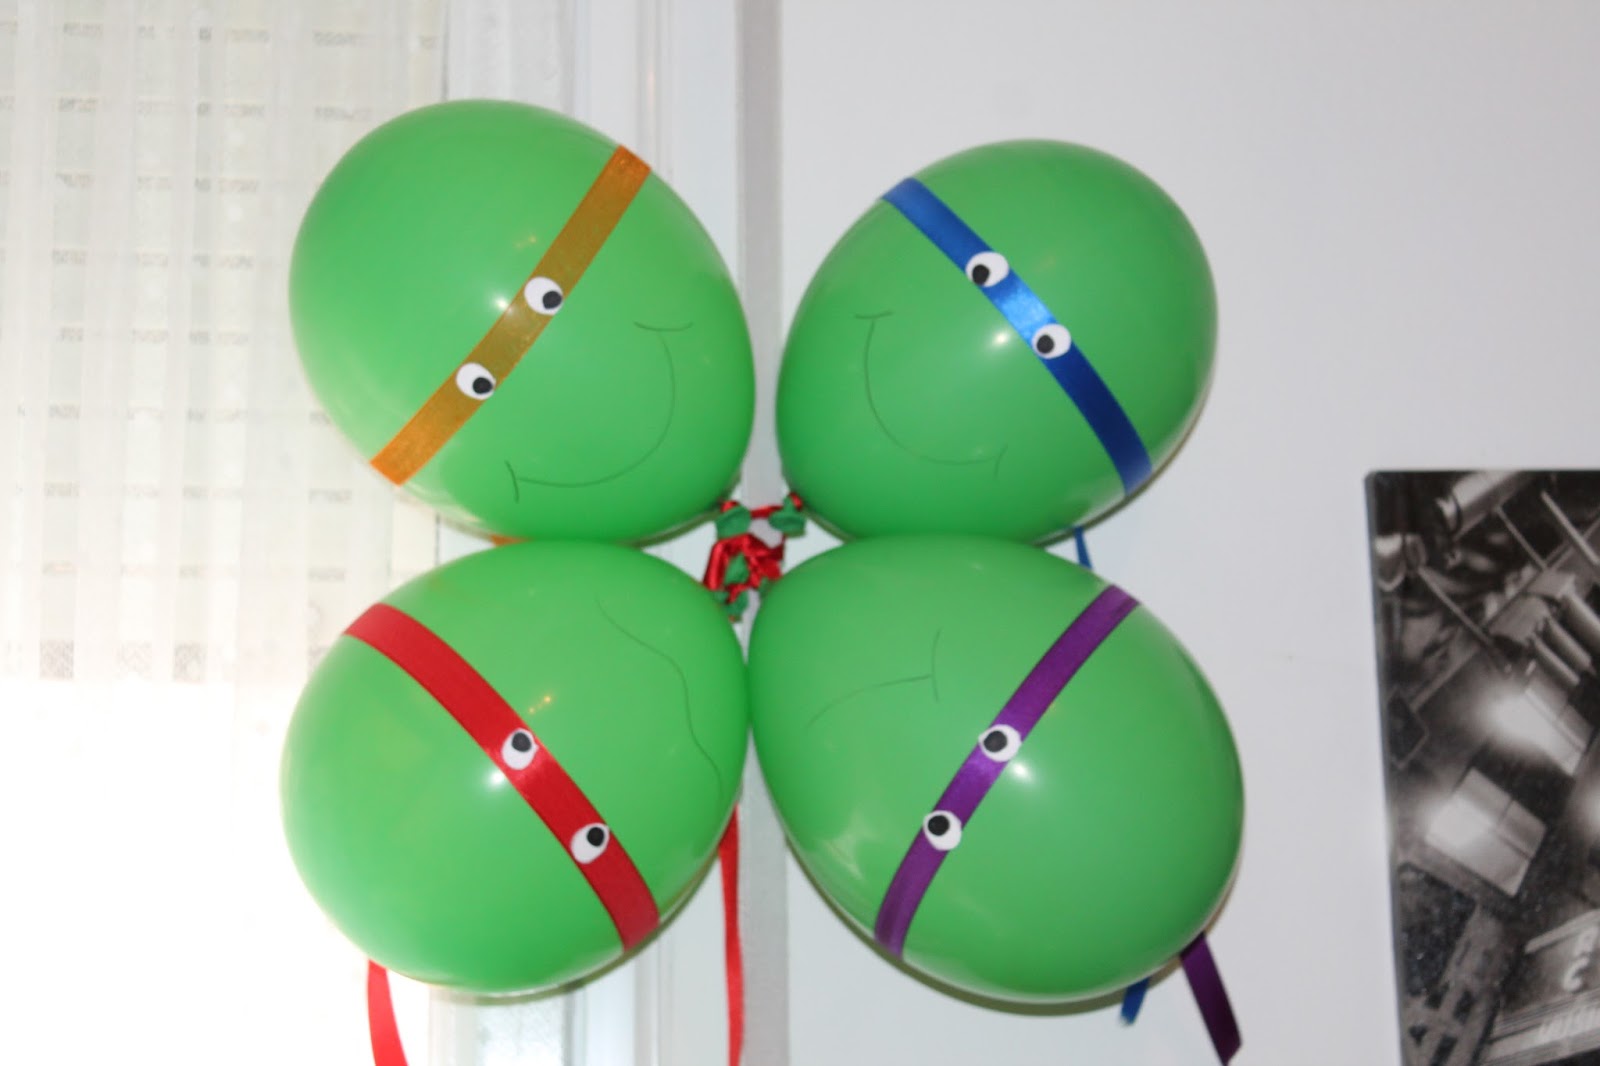 Ninja turtles party – Idee per una festa a tema – Dire, fare, condividere